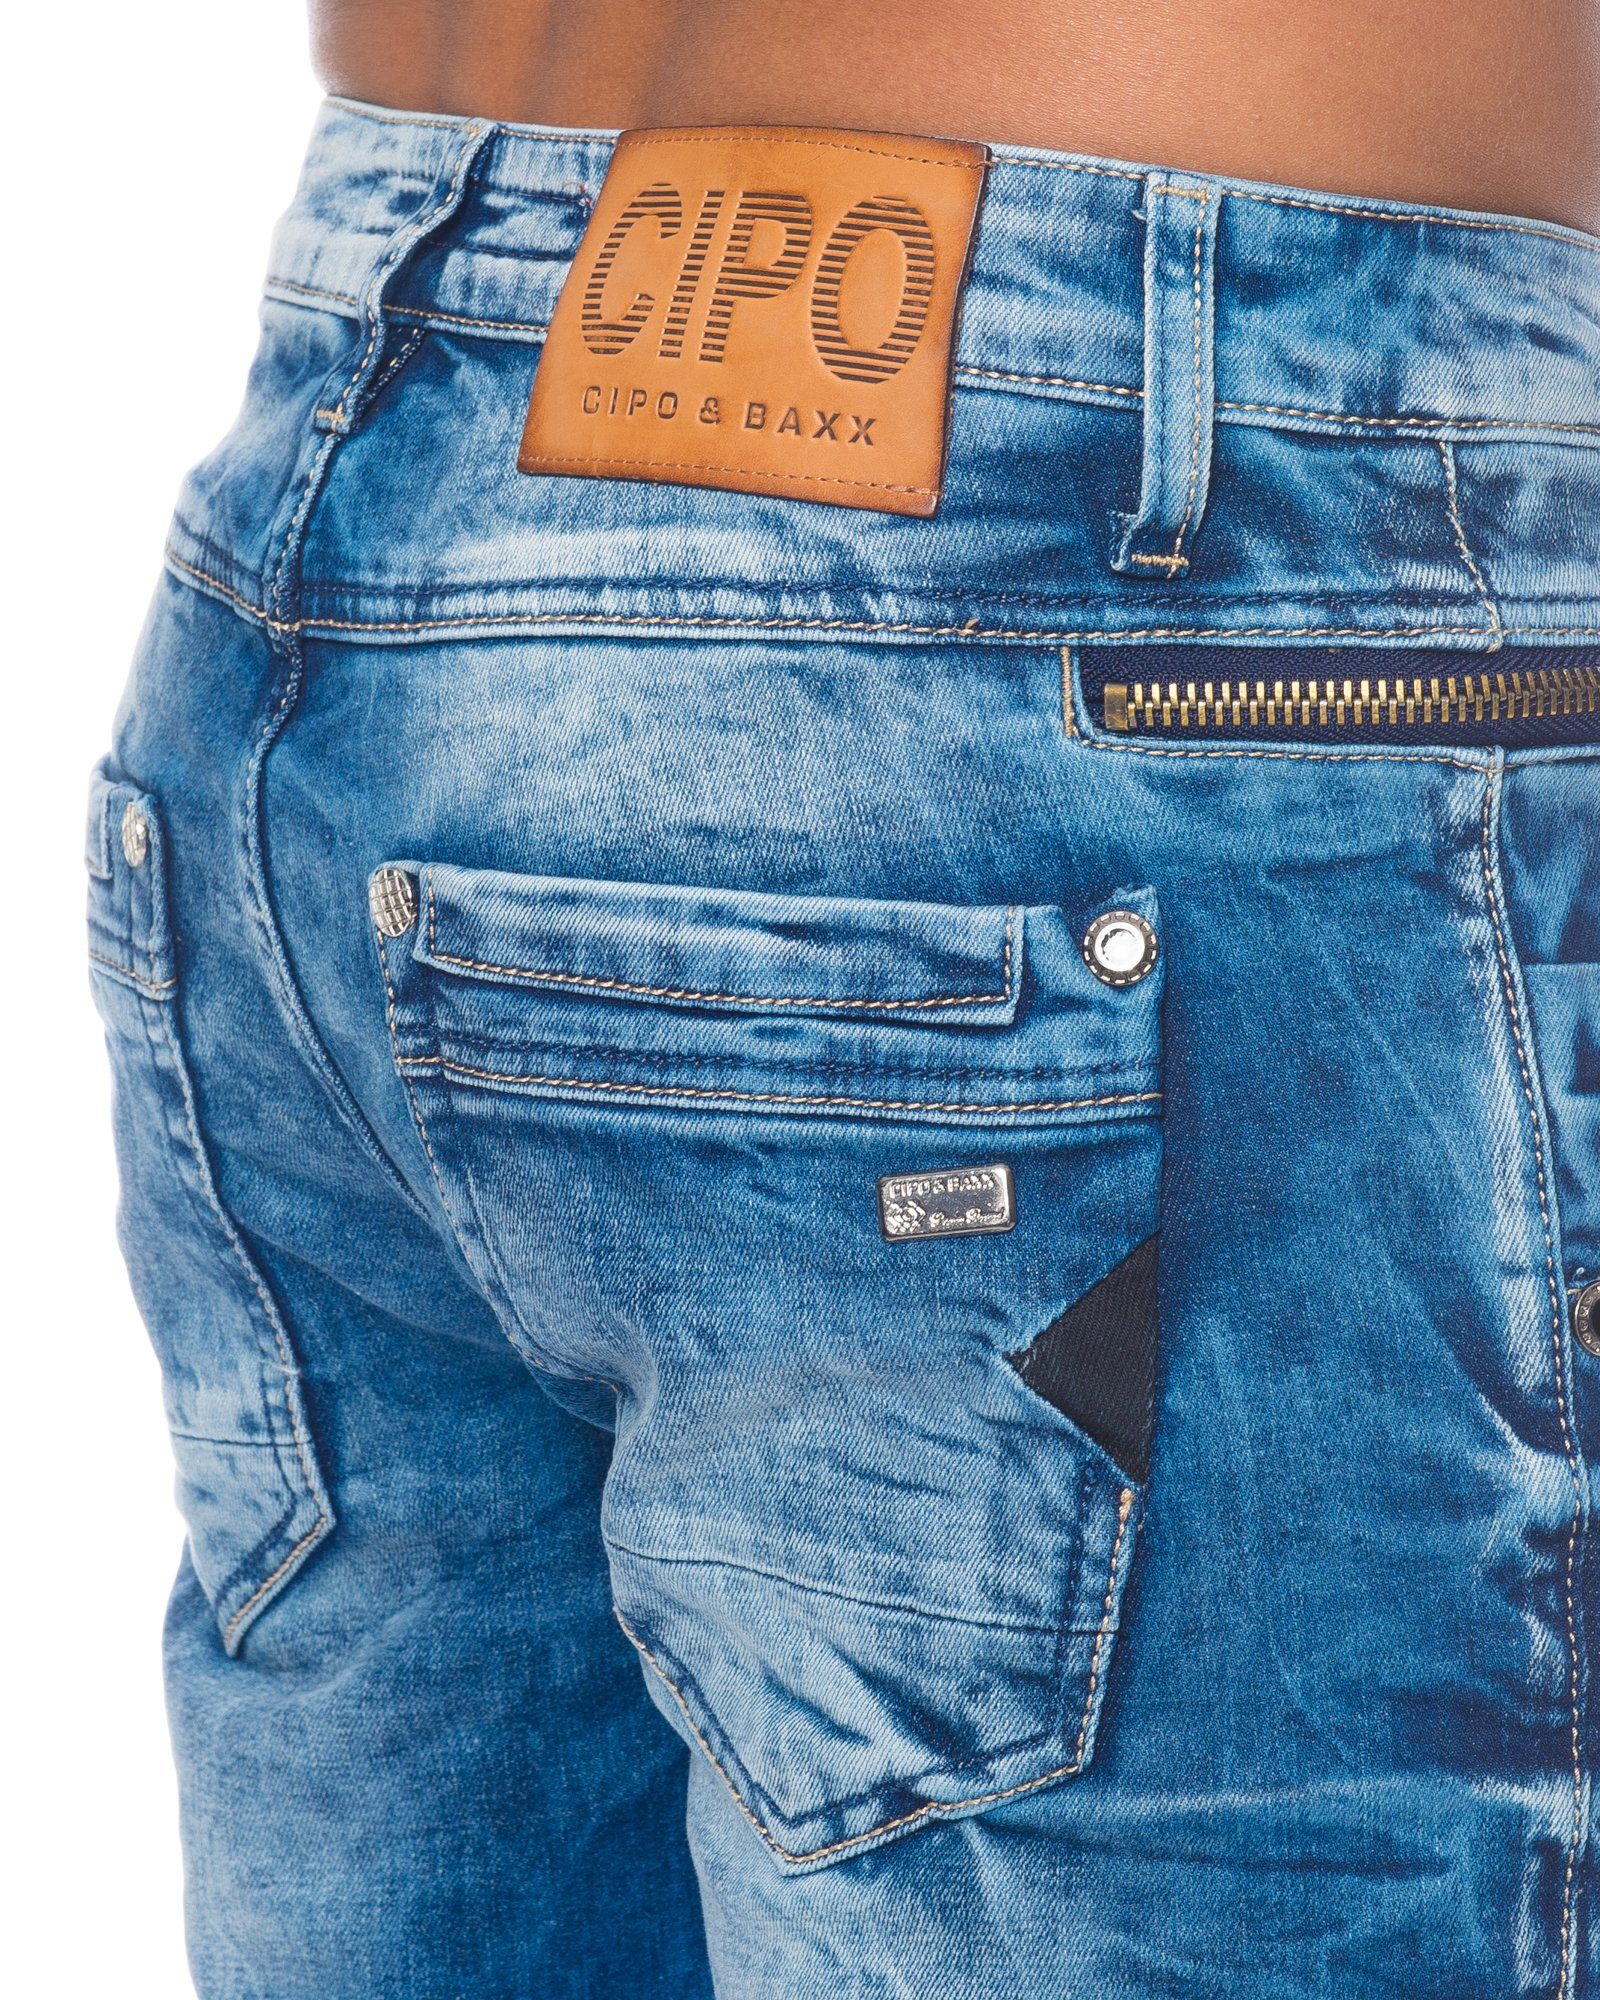 Cipo & mit Münztaschen modischem Jeans mit Stretch Design Baxx Herren hose Slim-fit-Jeans Freizeithose Stoff und farbigem den an